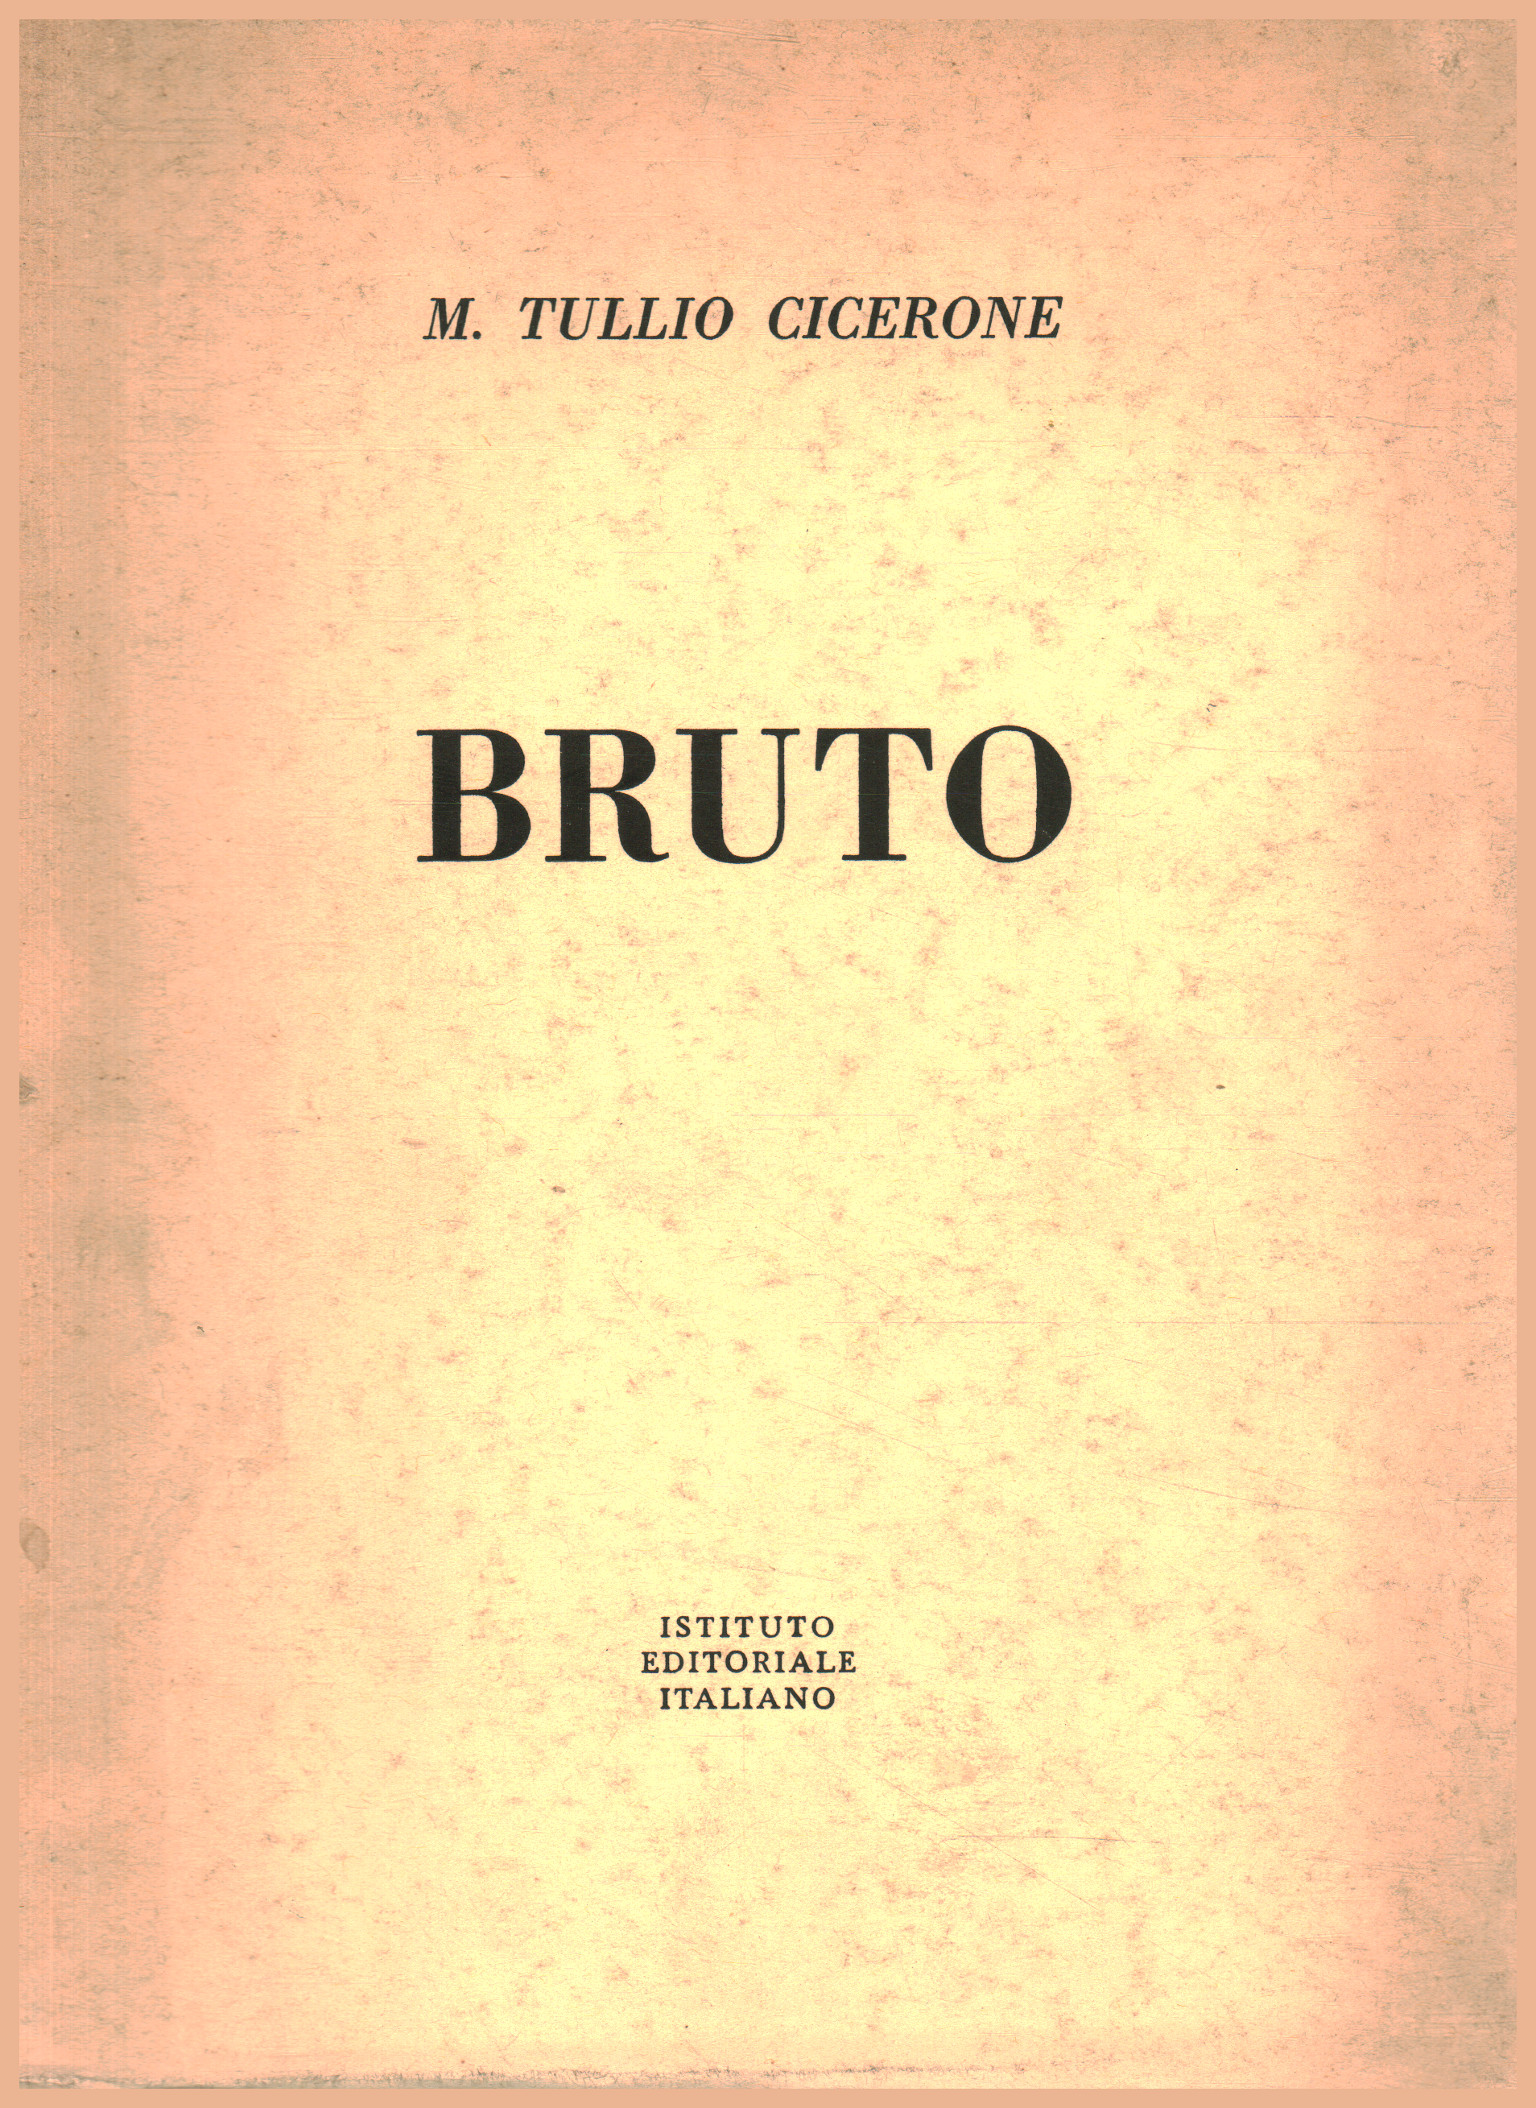 Brutus, M. Tullio Cicero